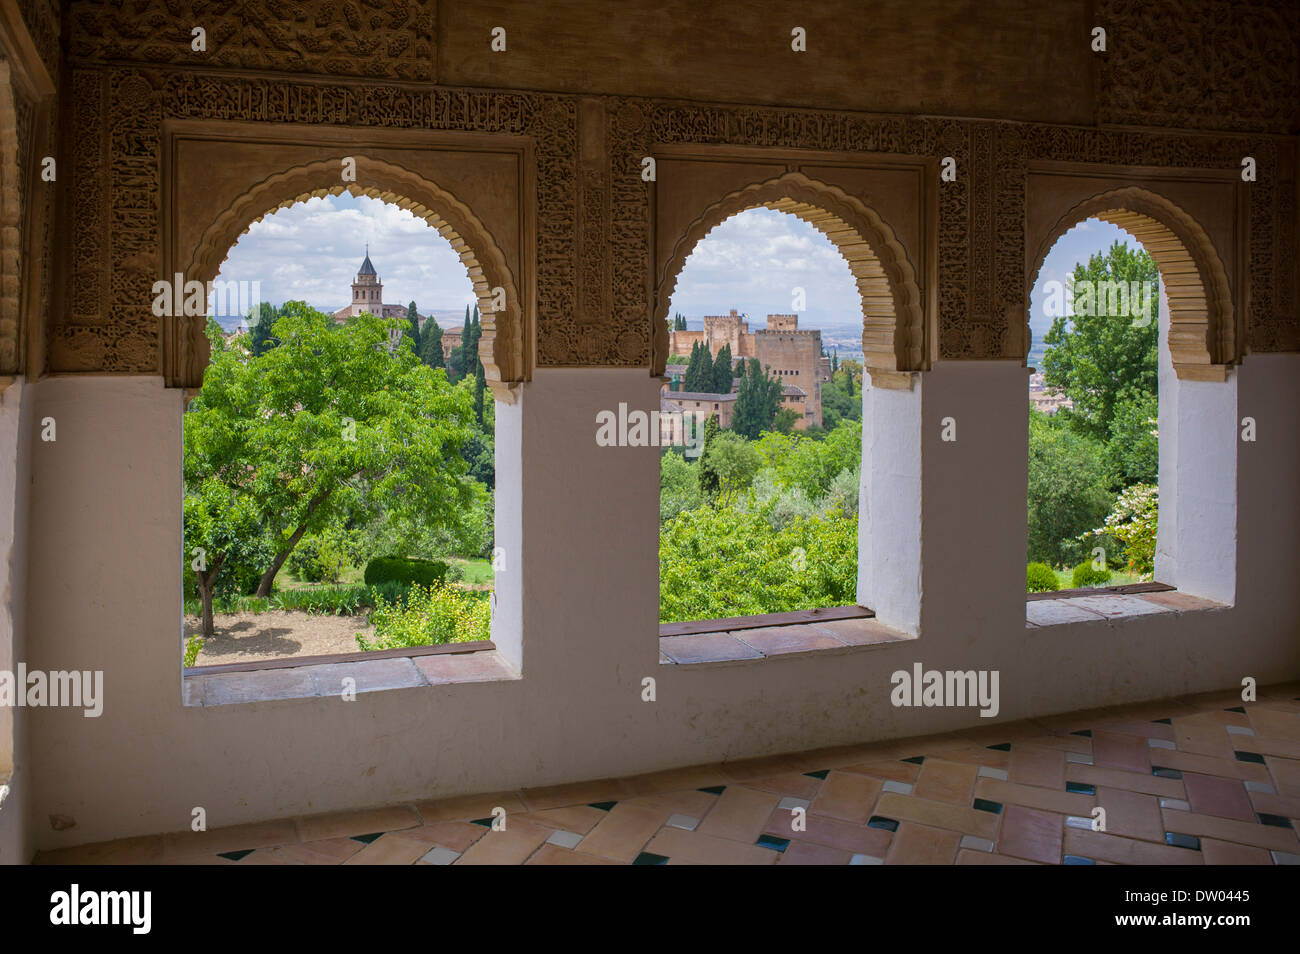 Vue de l'Alhambra avec ses palais et jardins, Site du patrimoine mondial de l'UNESCO, Grenade, Andalousie, Espagne Banque D'Images